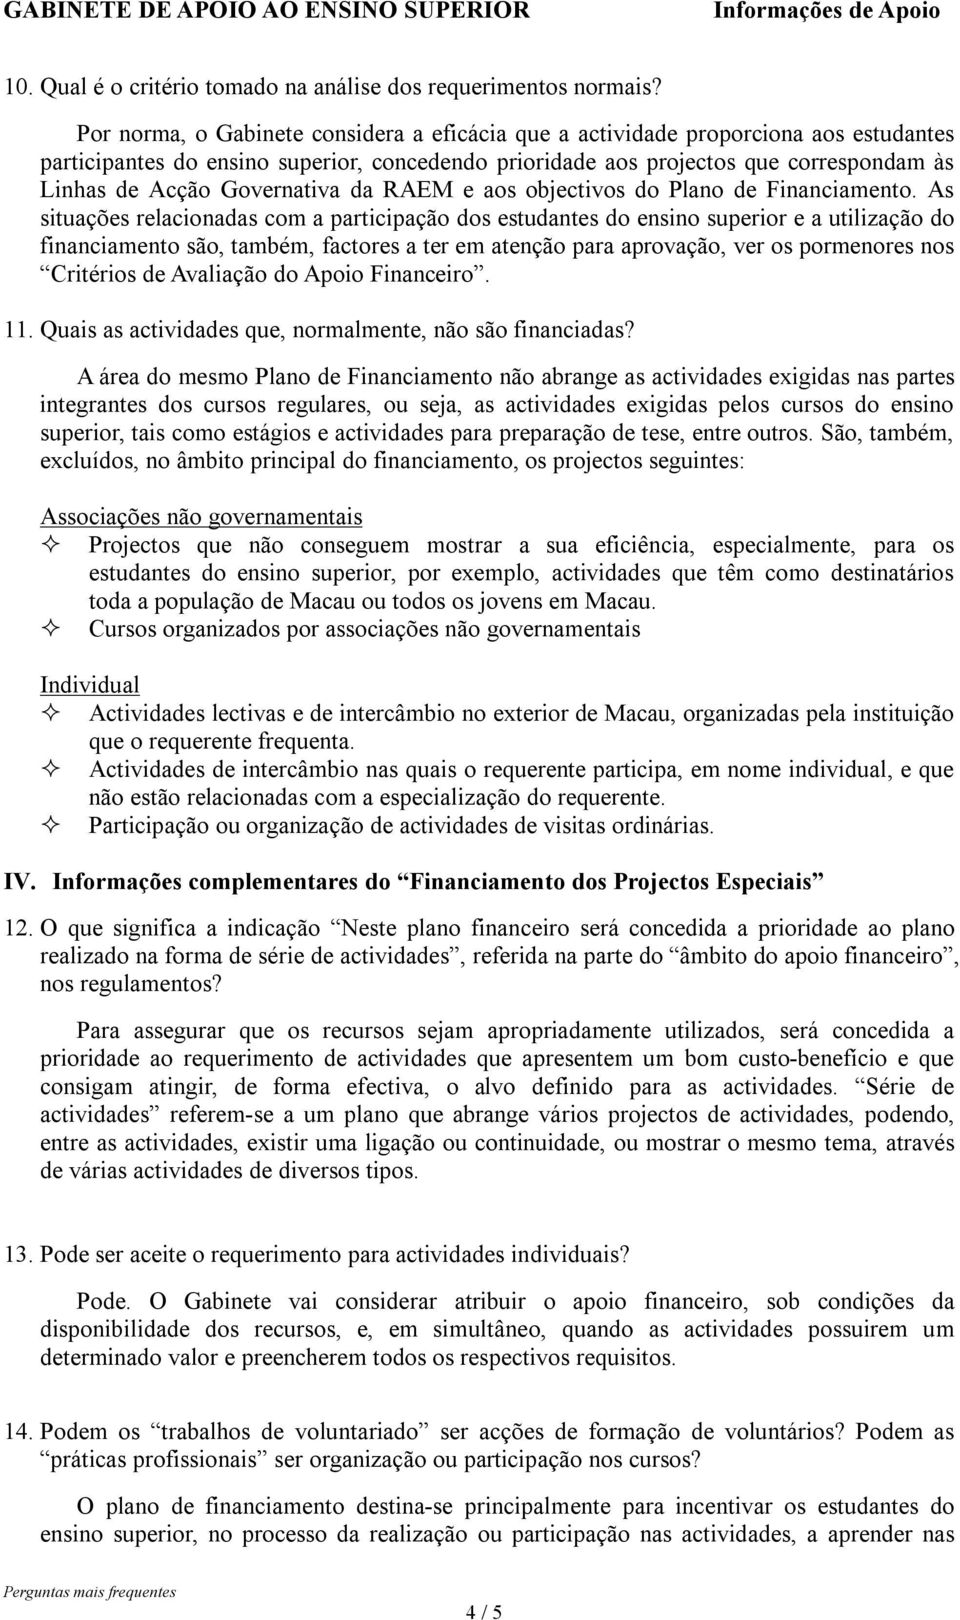 Governativa da RAEM e aos objectivos do Plano de Financiamento.